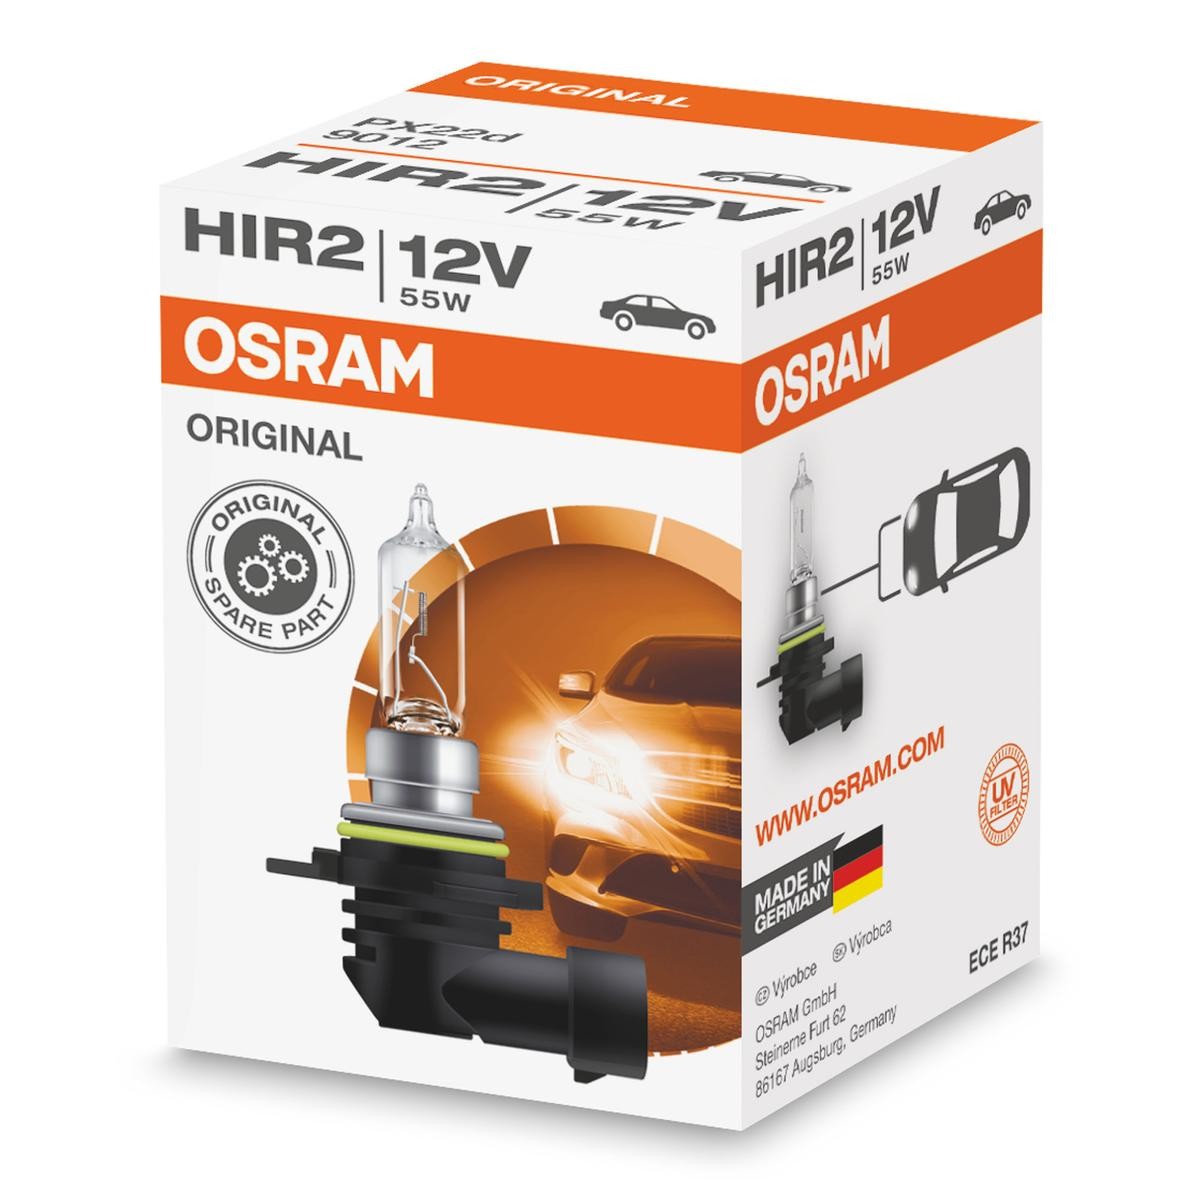 High beam bulb 9012 OSRAM HIR2 original quality